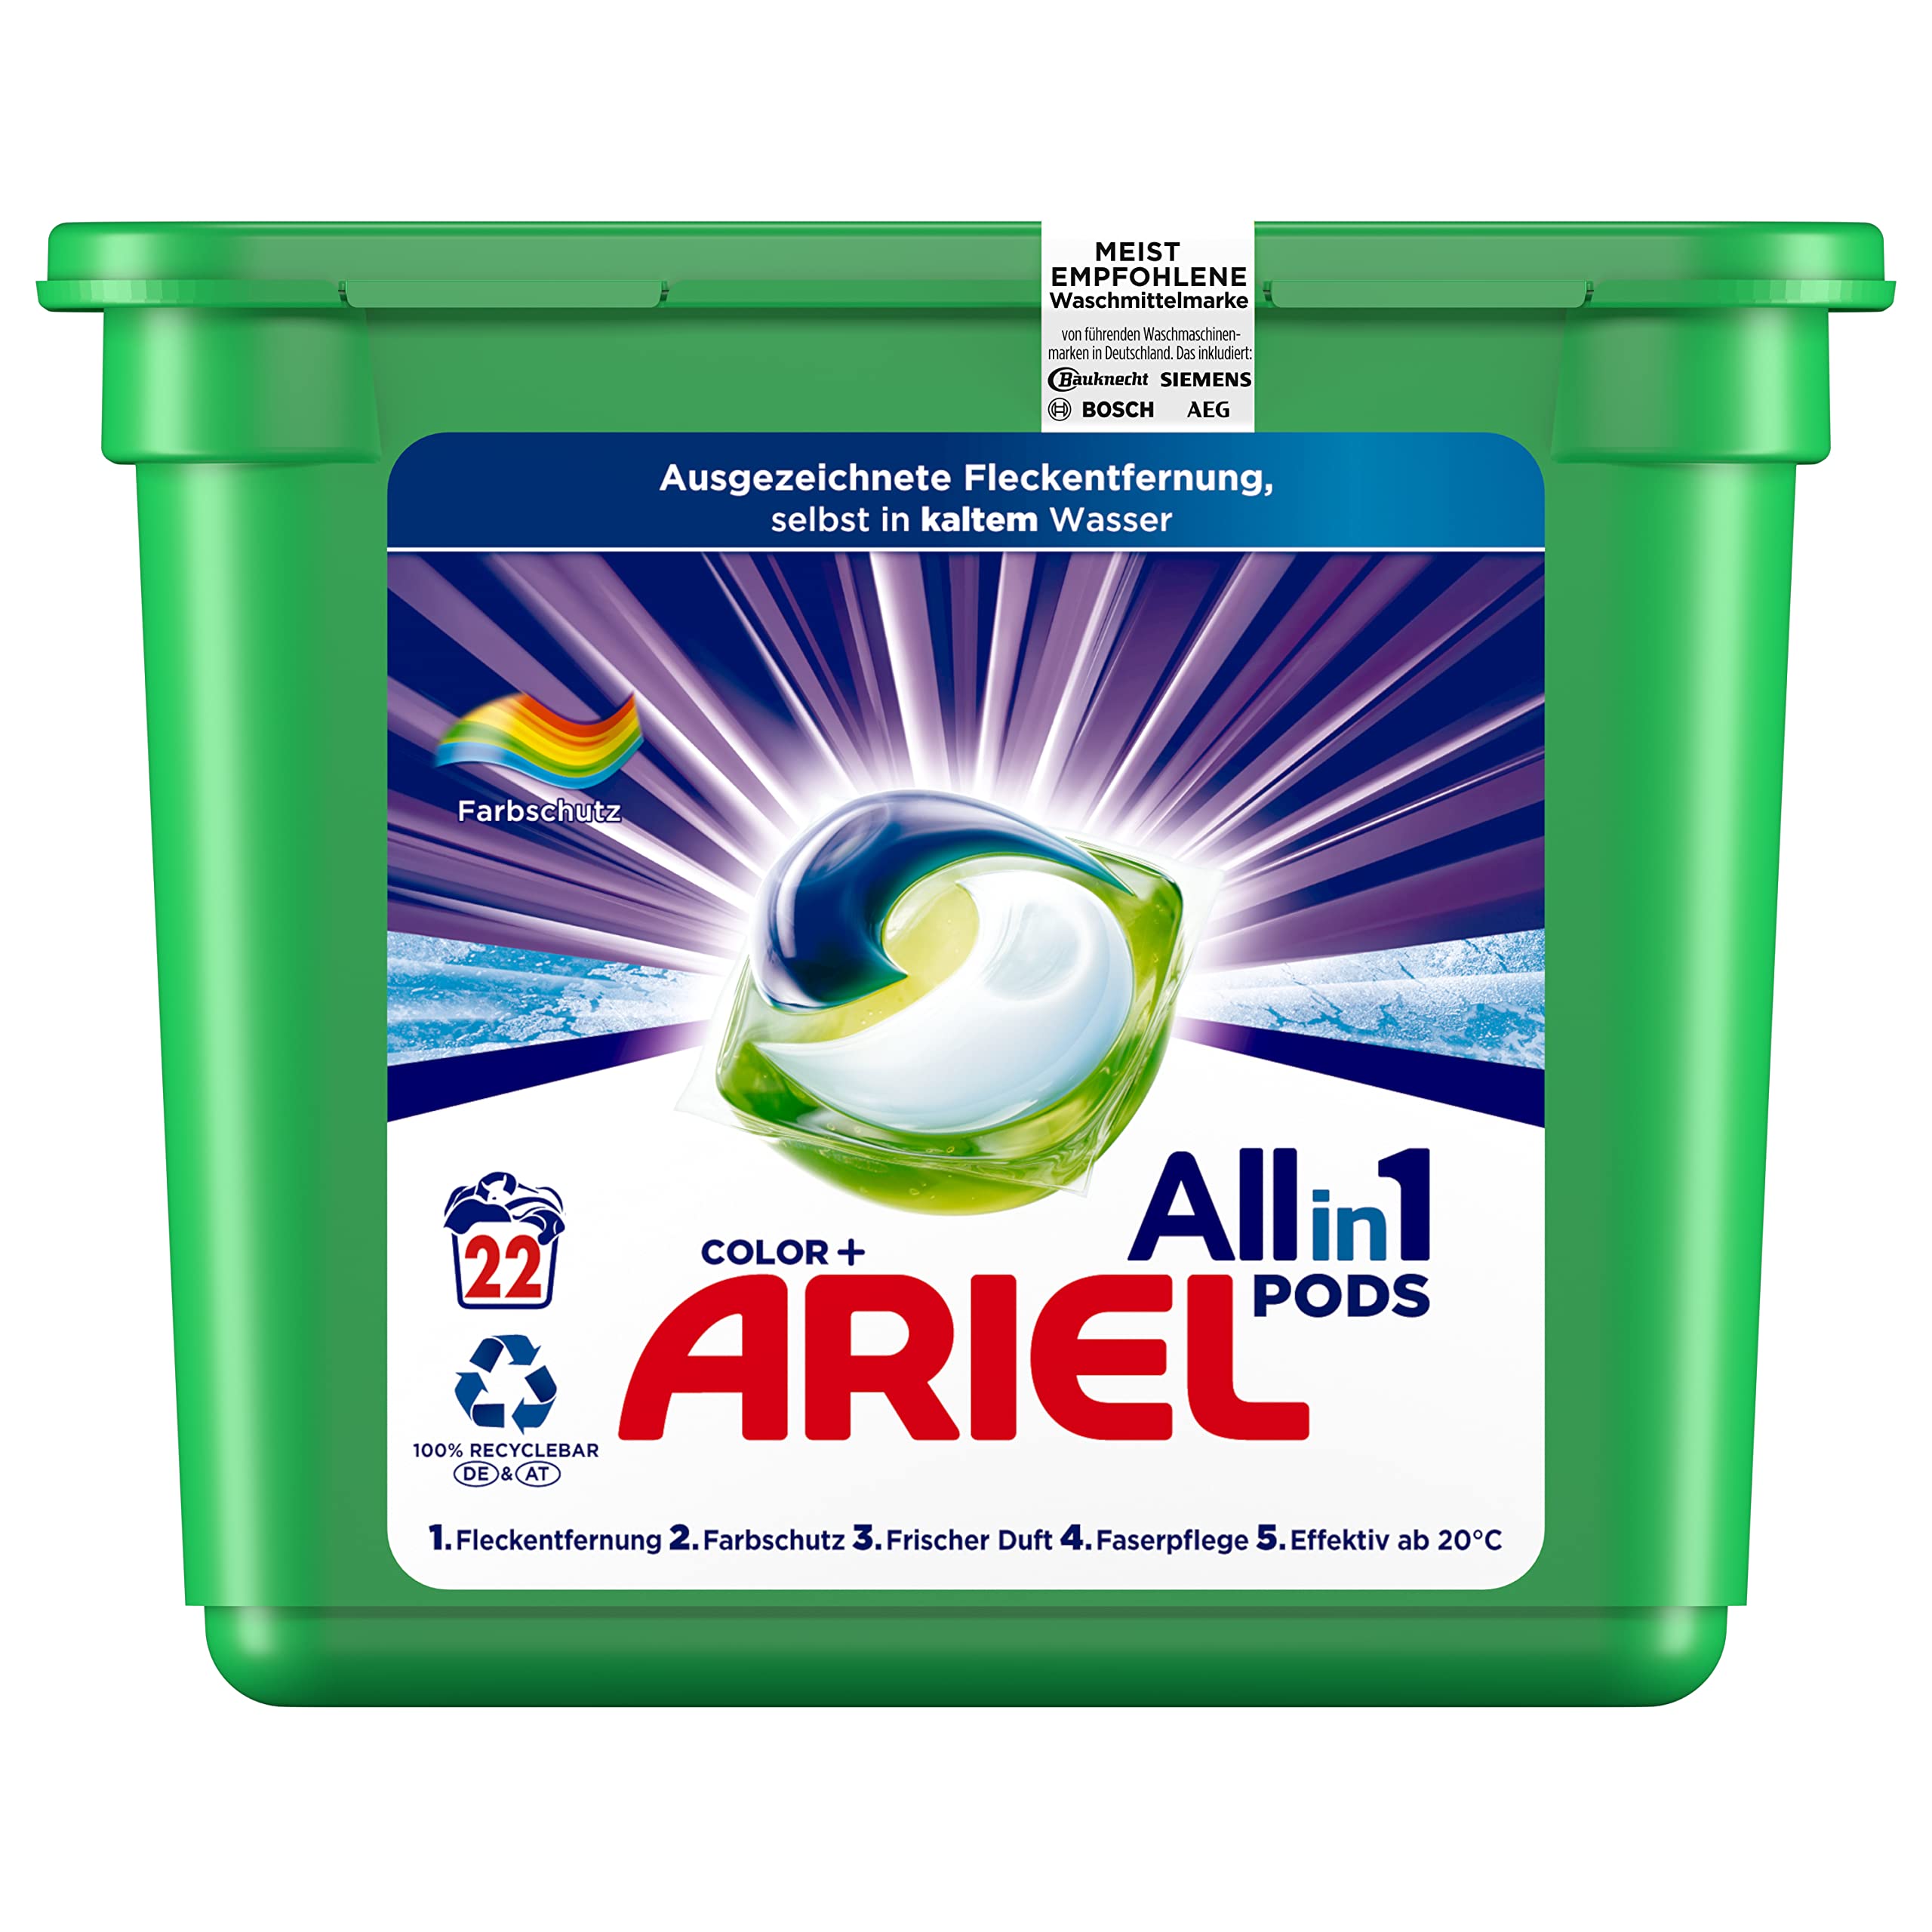 Ariel Waschmittel Pods All-in-1, Color Waschmittel, 22 Waschladungen, Frischer Wäscheduft und Farbschutz